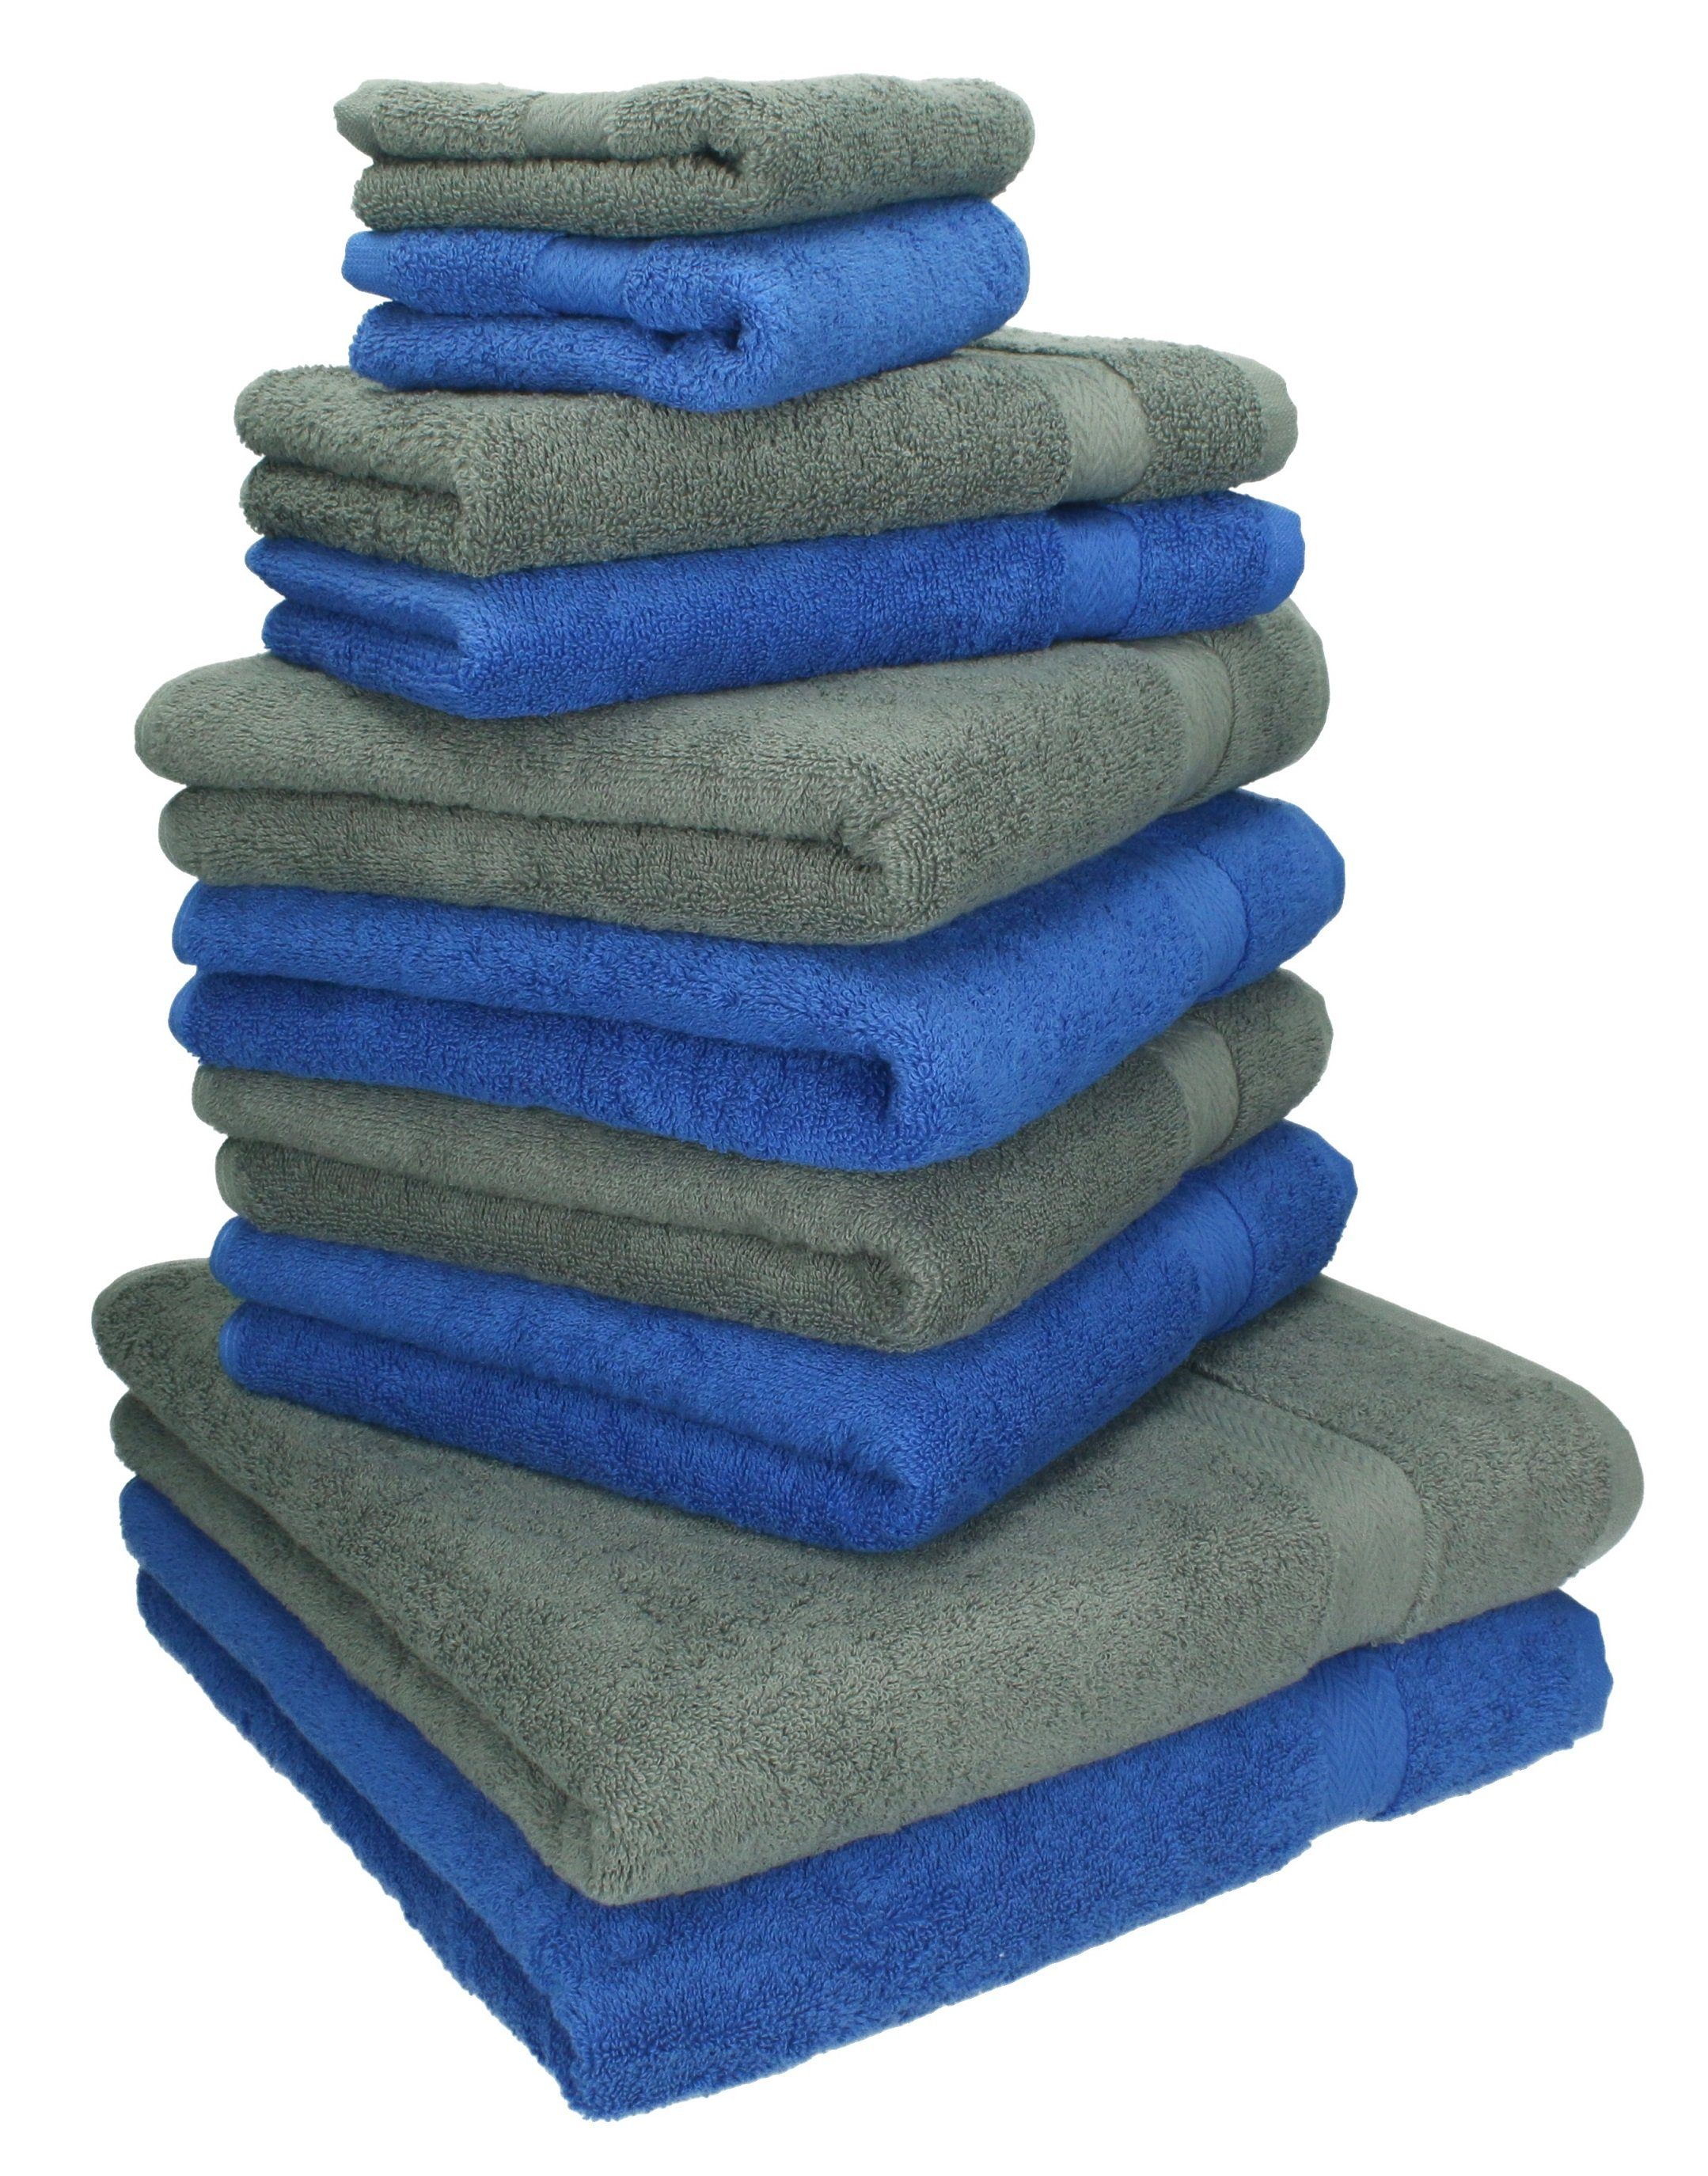 Betz Handtuch Set 10-TLG. Handtuch-Set Classic Farbe royalblau und anthrazit, 100% Baumwolle